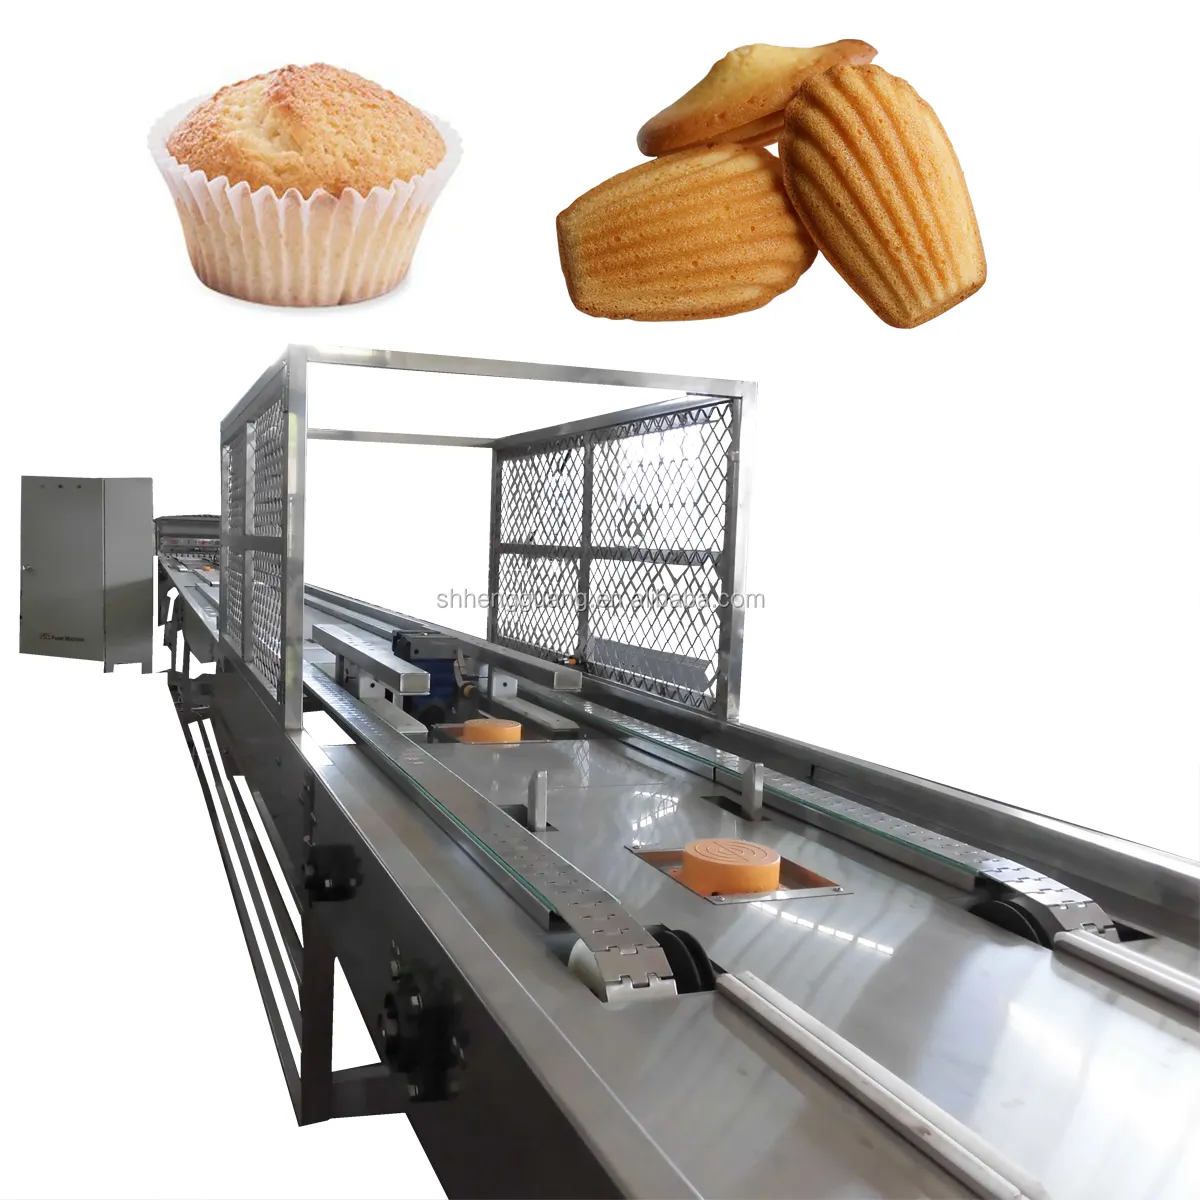 センター充填カップケーキ工場機械カップケーキマフィンケーキスポンジケーキ生産ライン